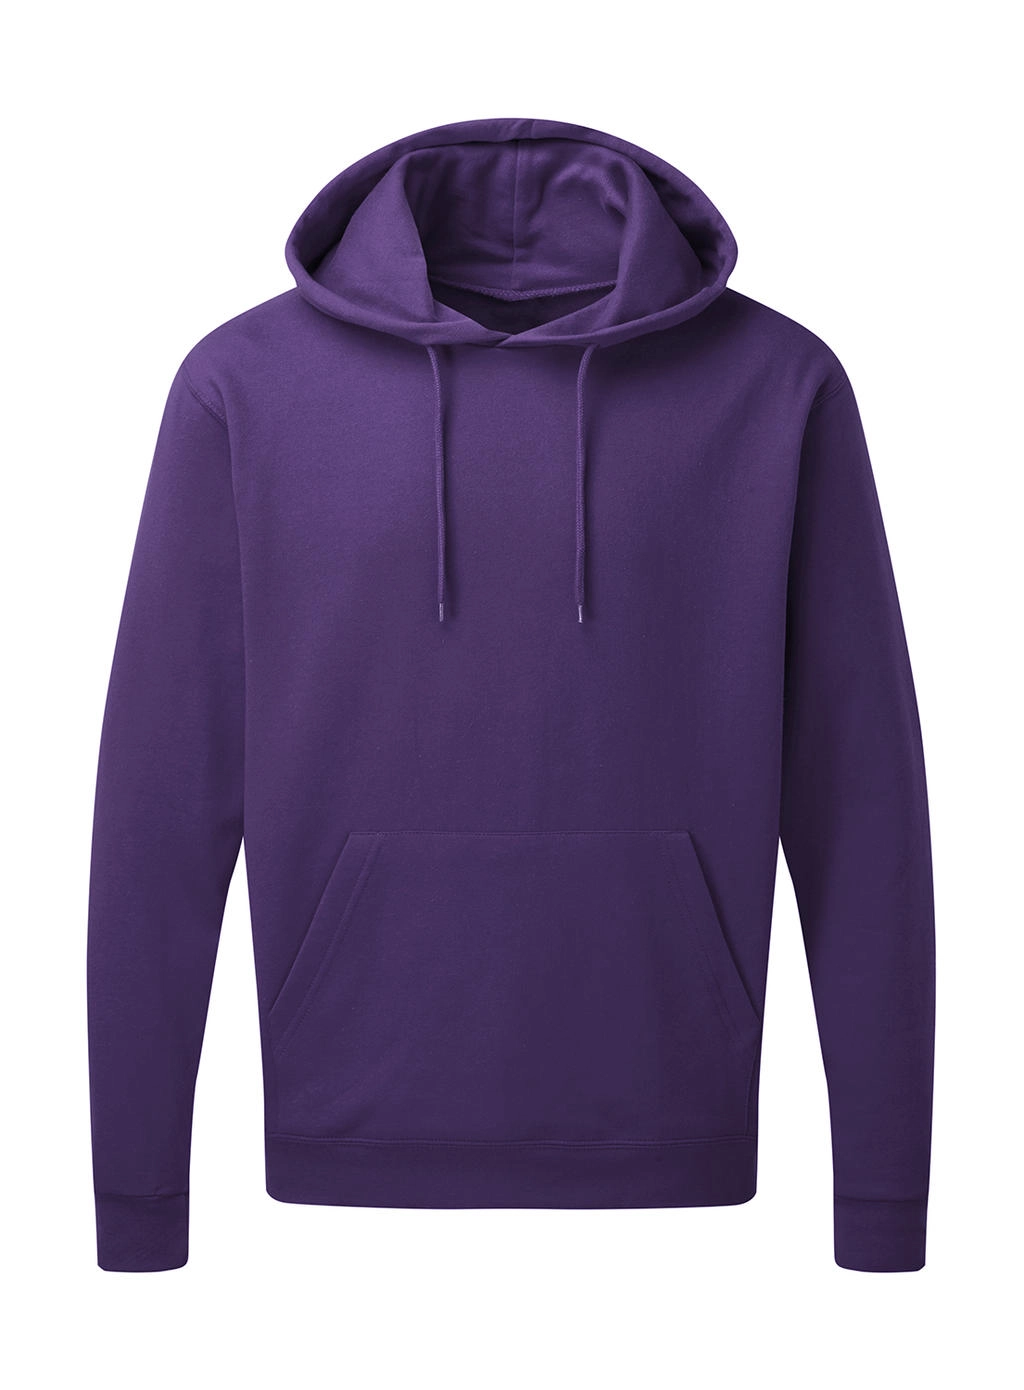 Hooded Sweatshirt Men zum Besticken und Bedrucken in der Farbe Purple mit Ihren Logo, Schriftzug oder Motiv.